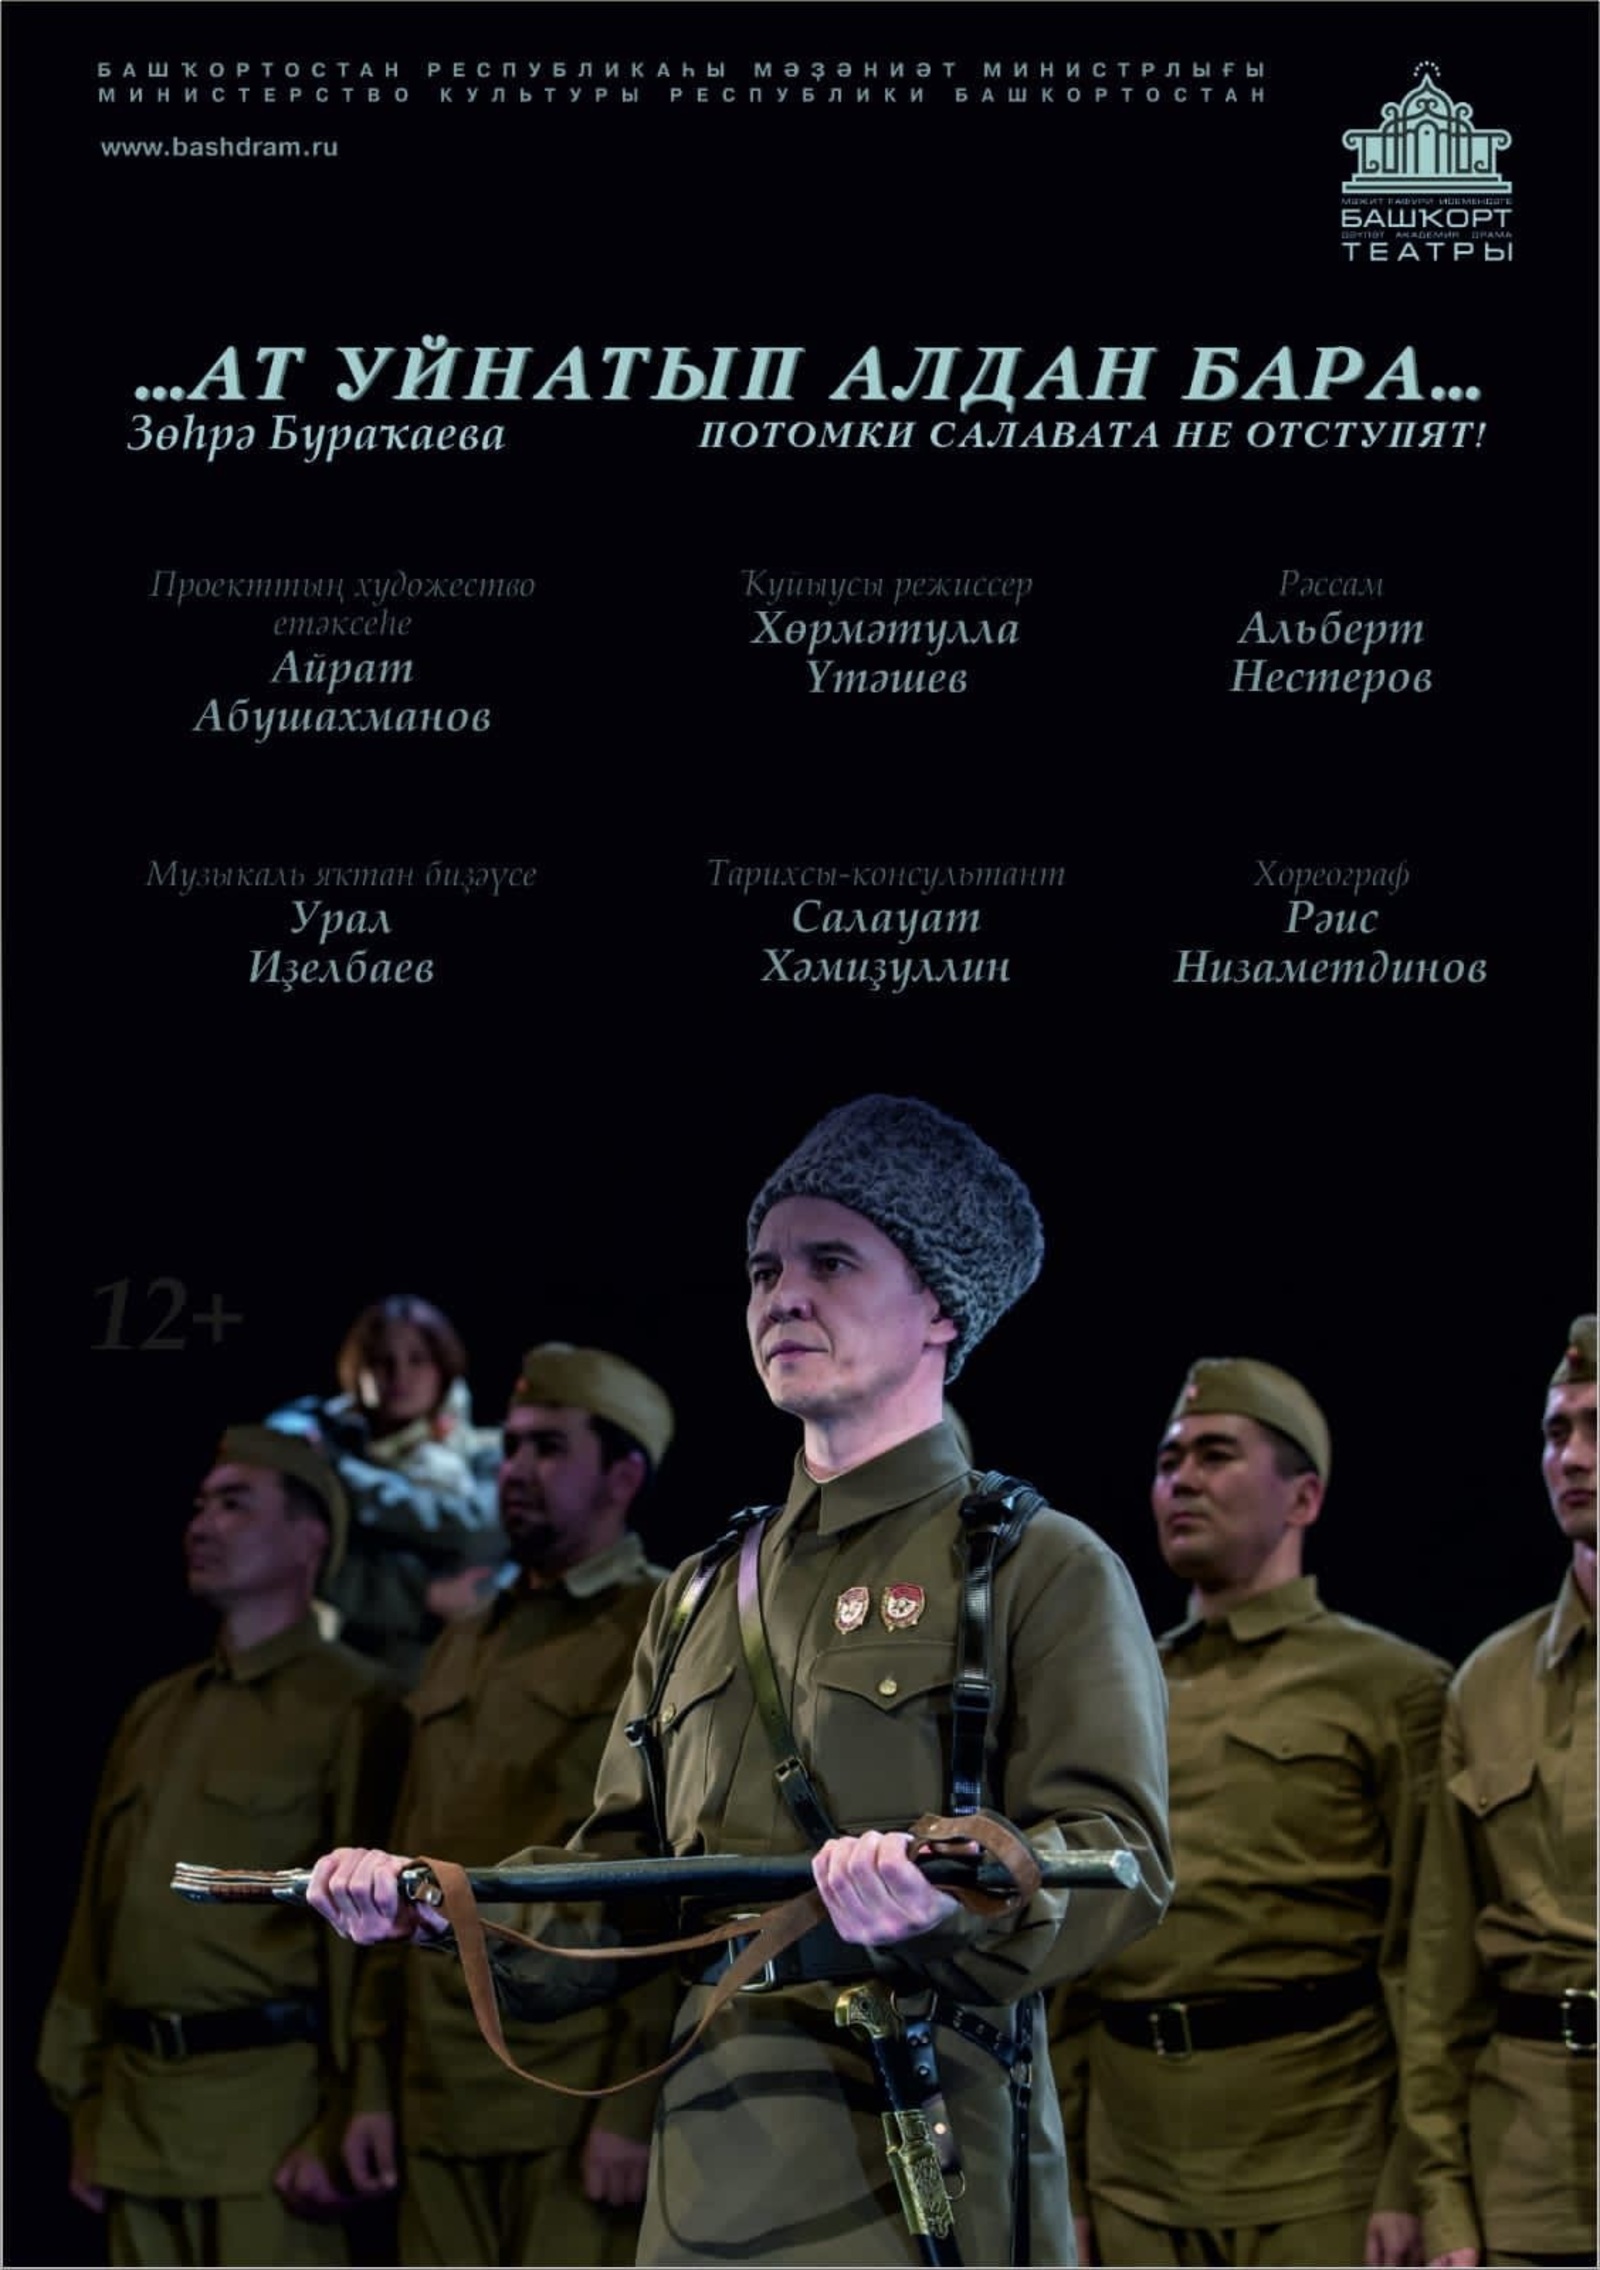 Сегодня в Месягутово состоится премьера спектакля Башдрамтеатра  о генерале Шаймуратове